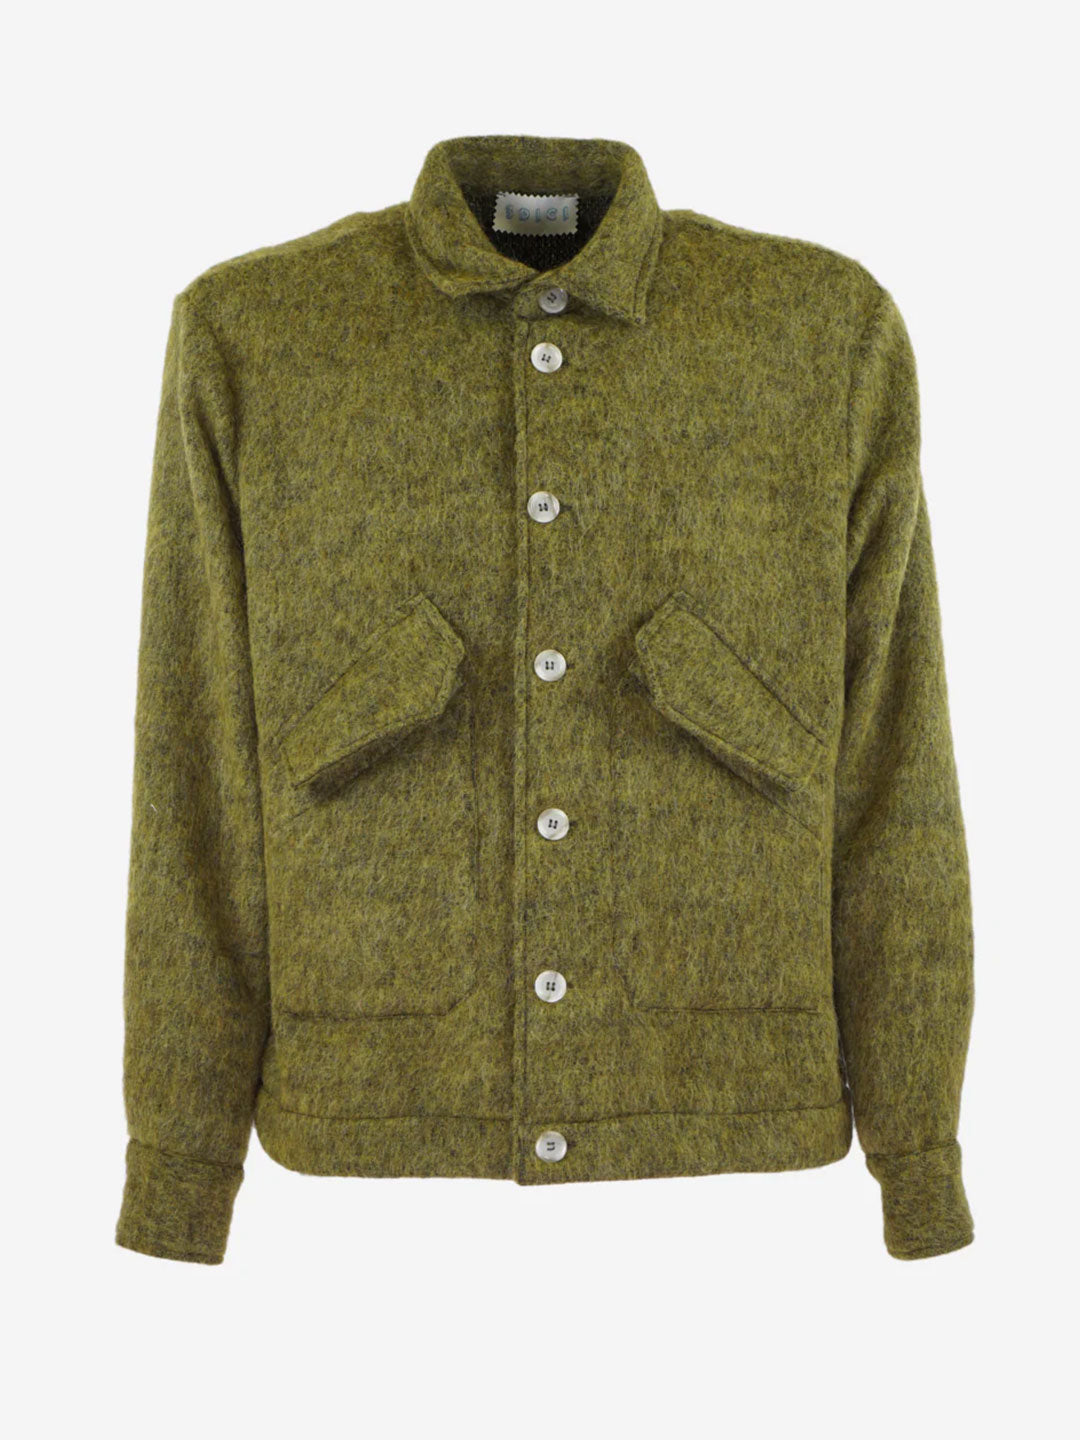 3Dici green wool blend shirt